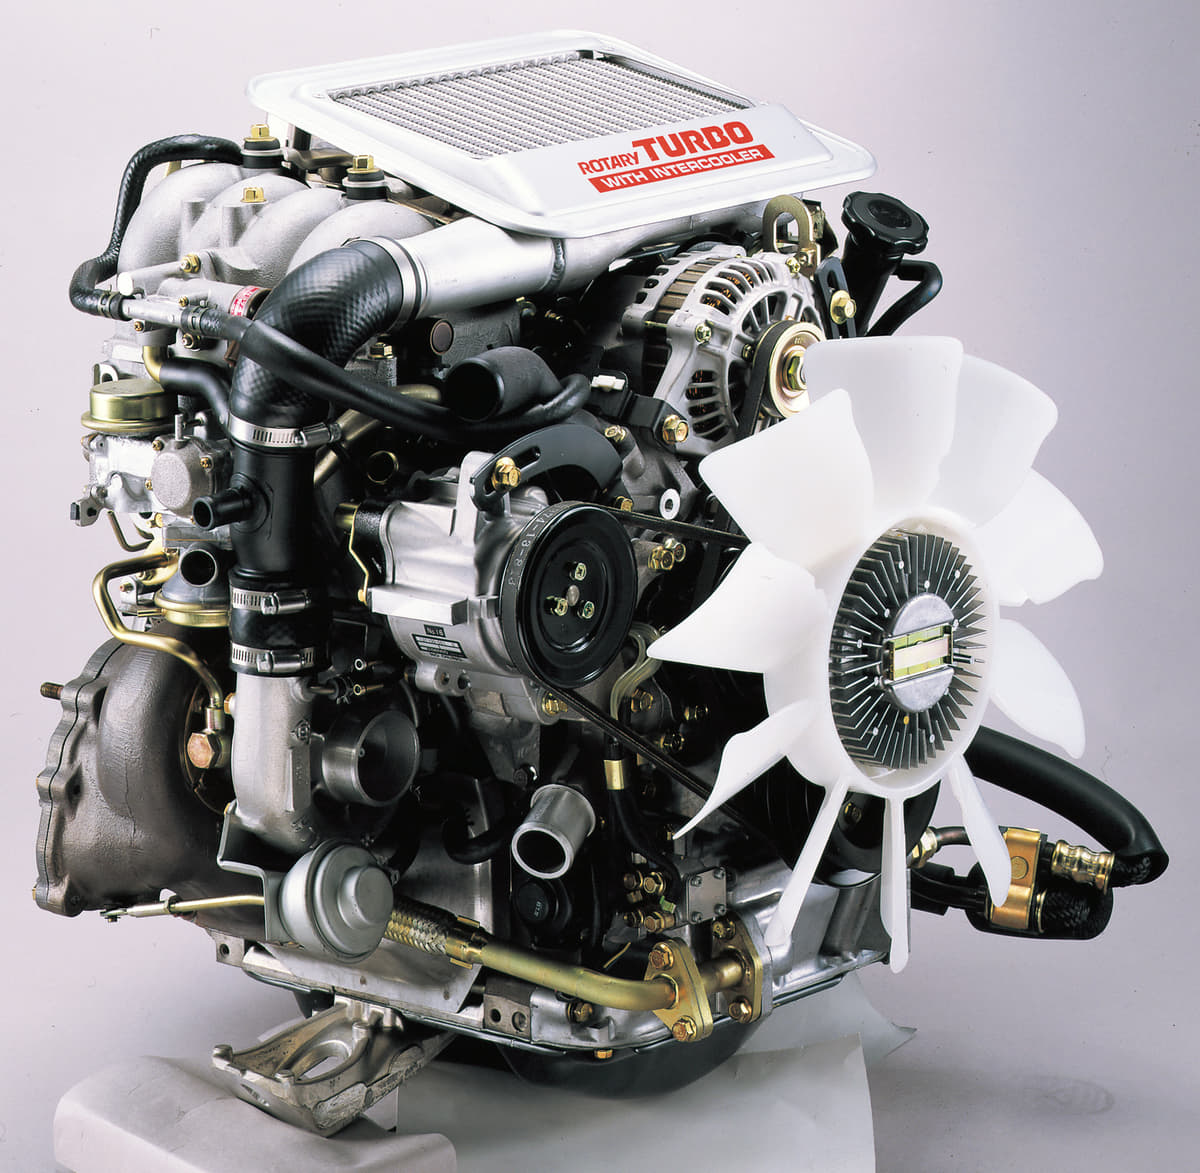 FC3S型RX-7に搭載されたロータリーエンジン